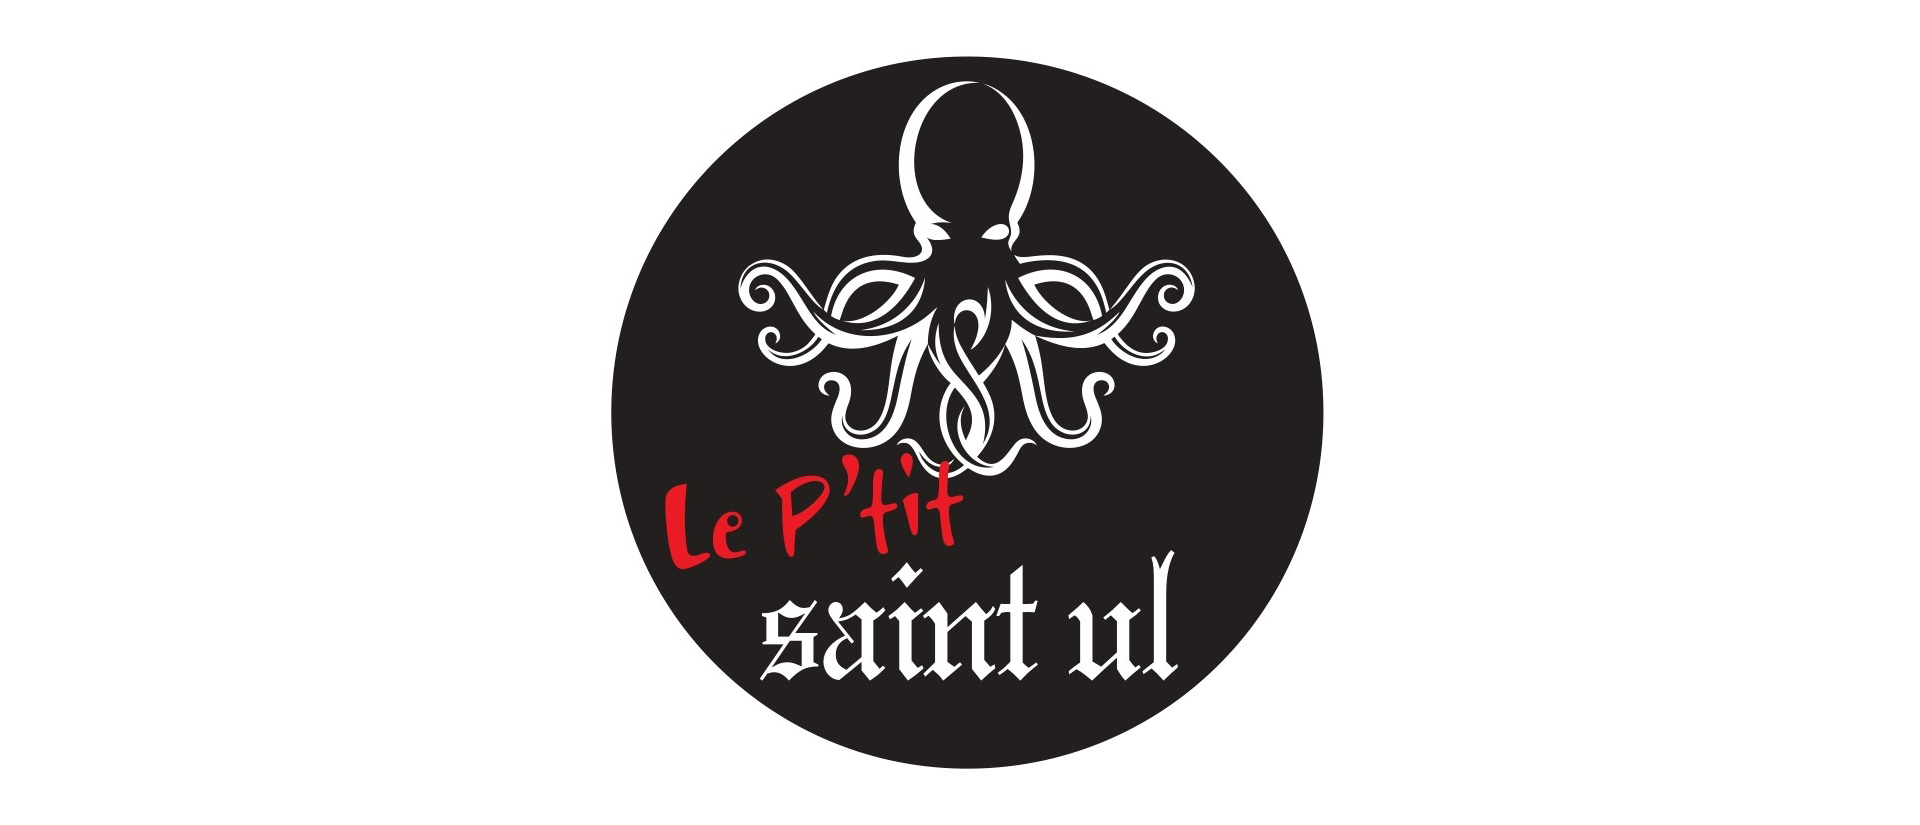 Cantine le P'tit Saint-UL